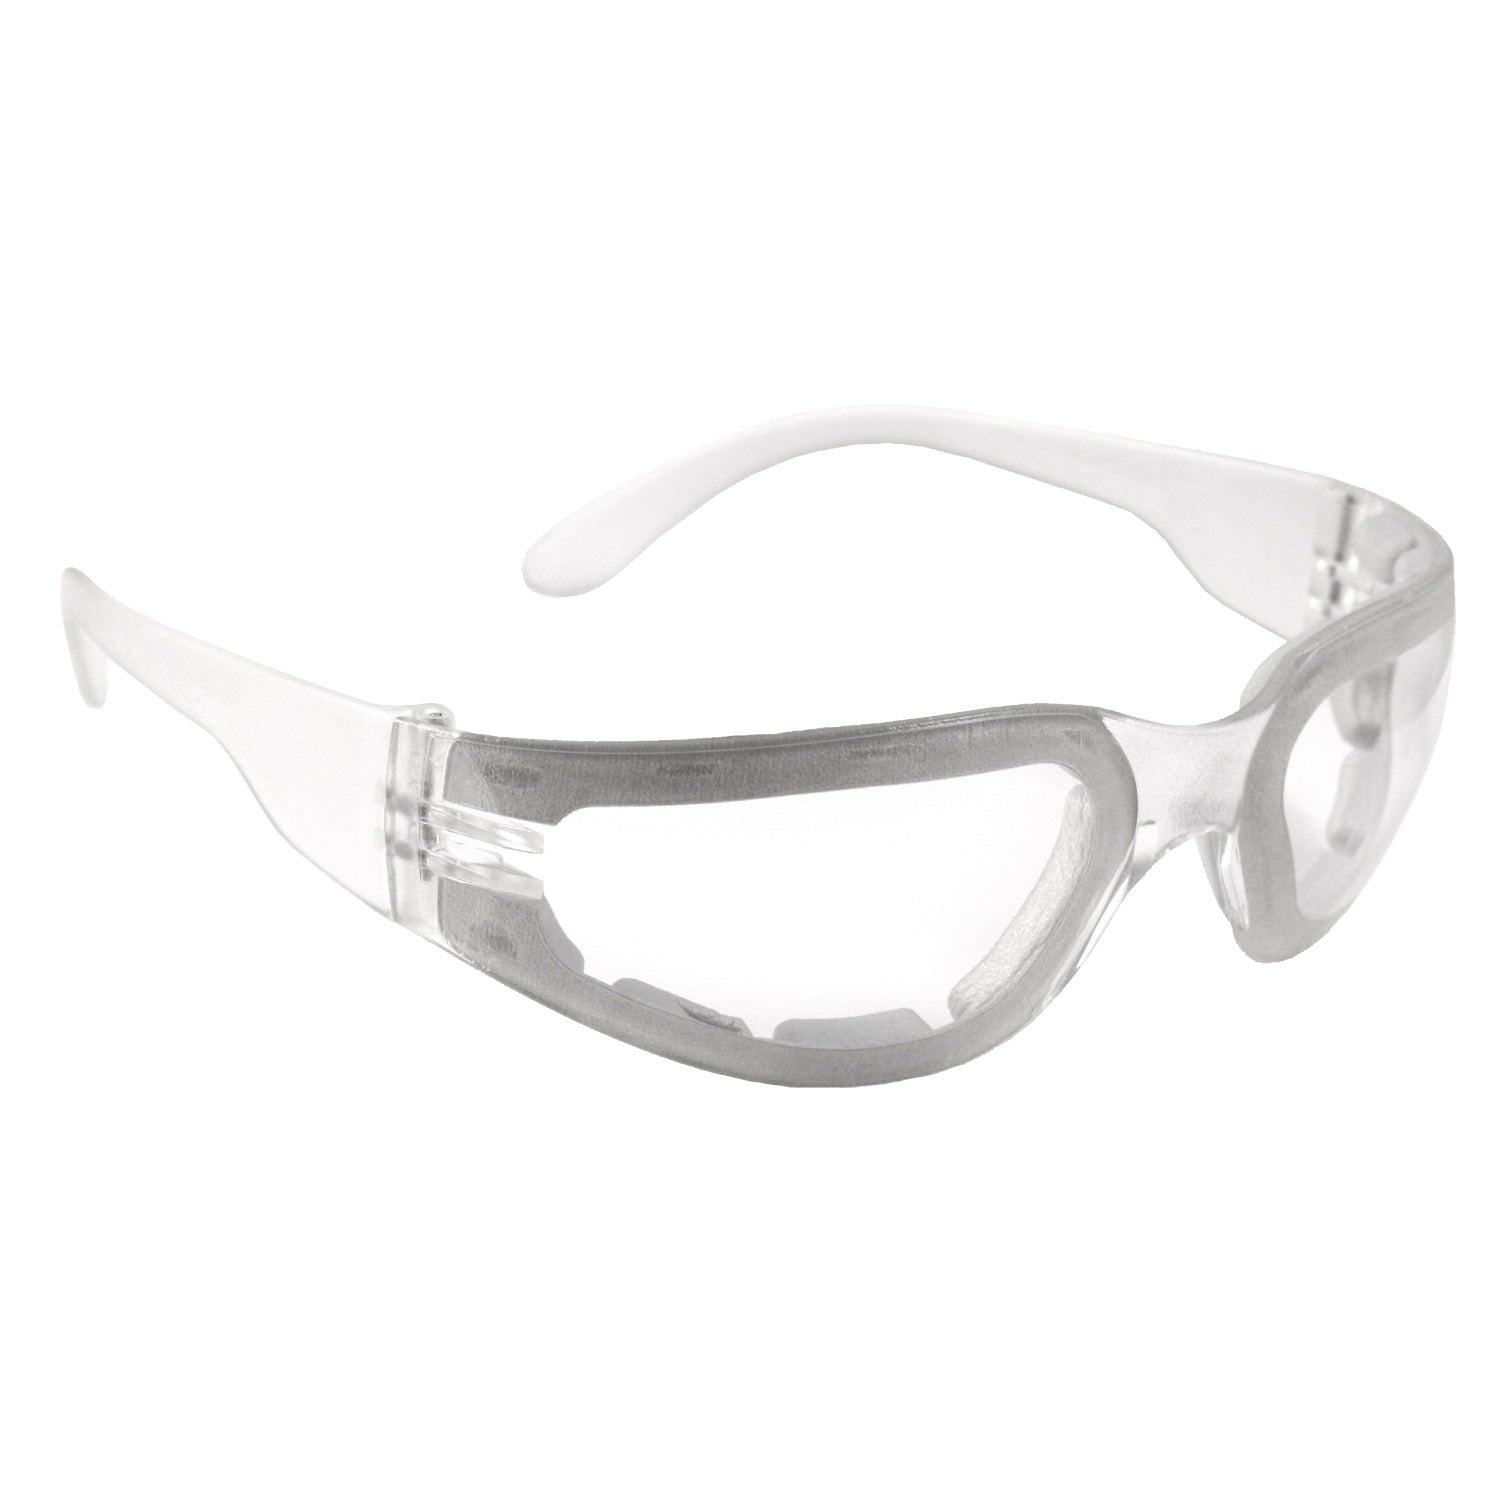 Radians Mirage™ Foam Small Safety Eyewear - Clear Frame - Clear Anti-Fog Lens